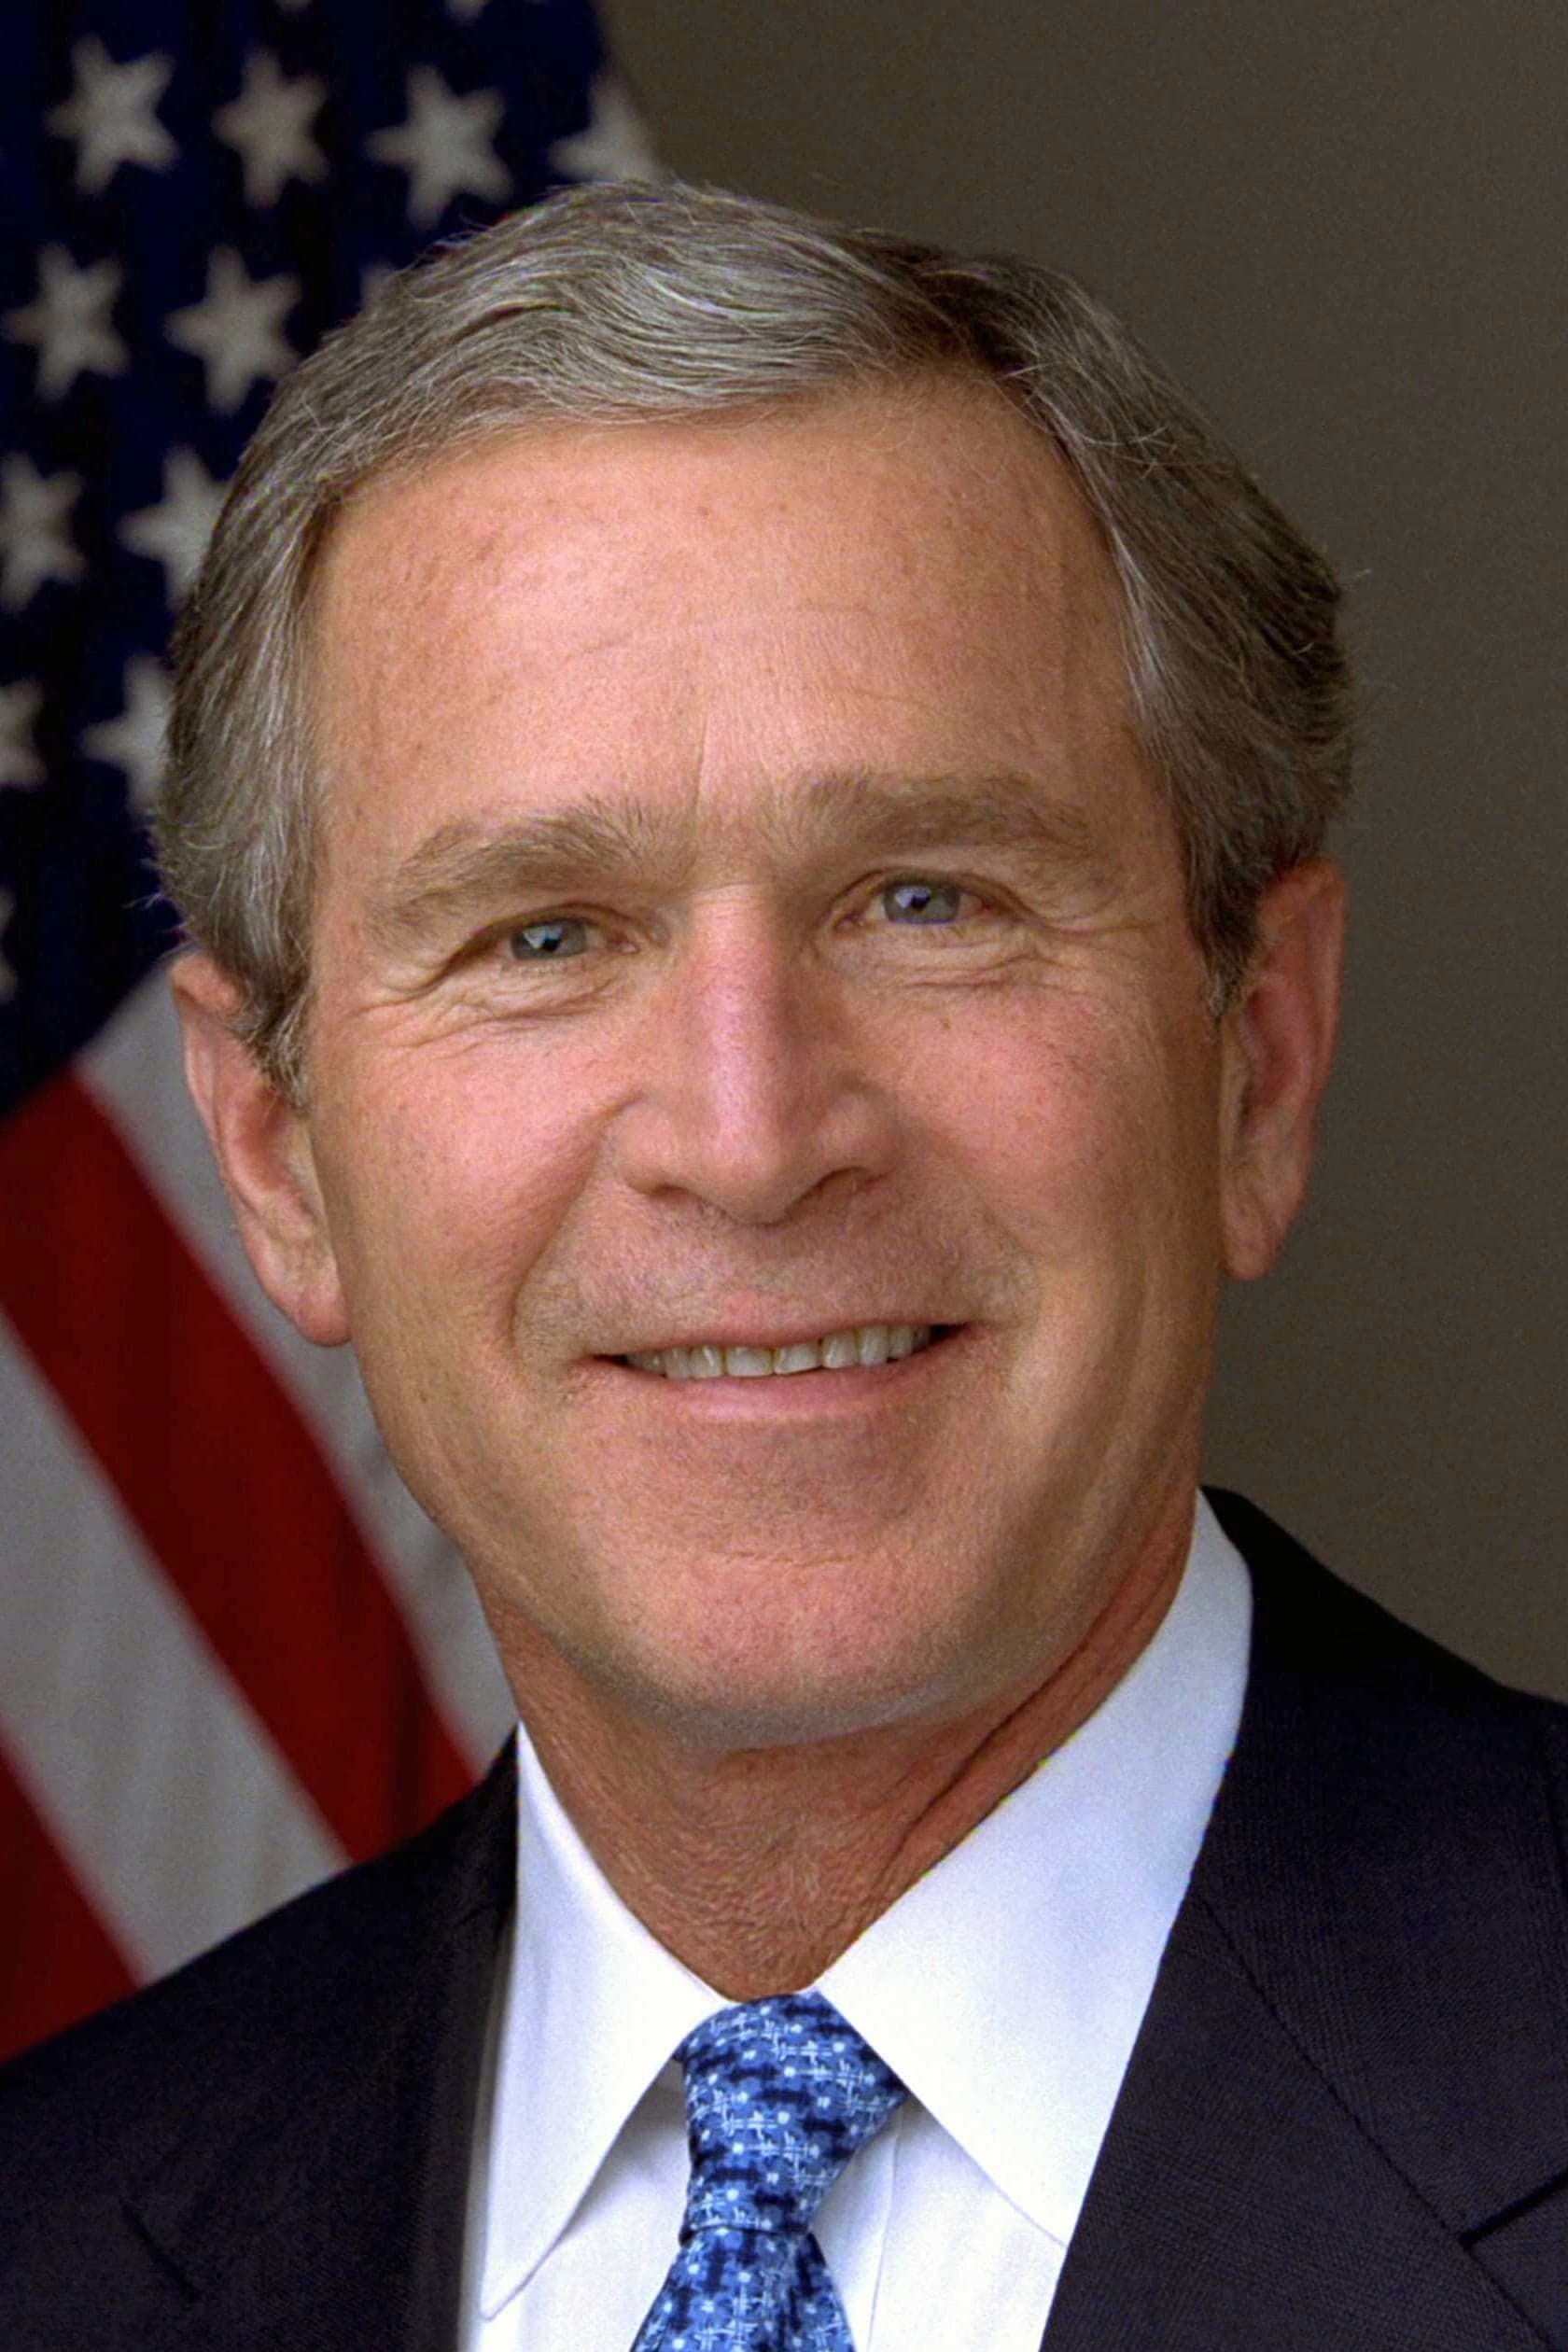 George W. Bush | Self